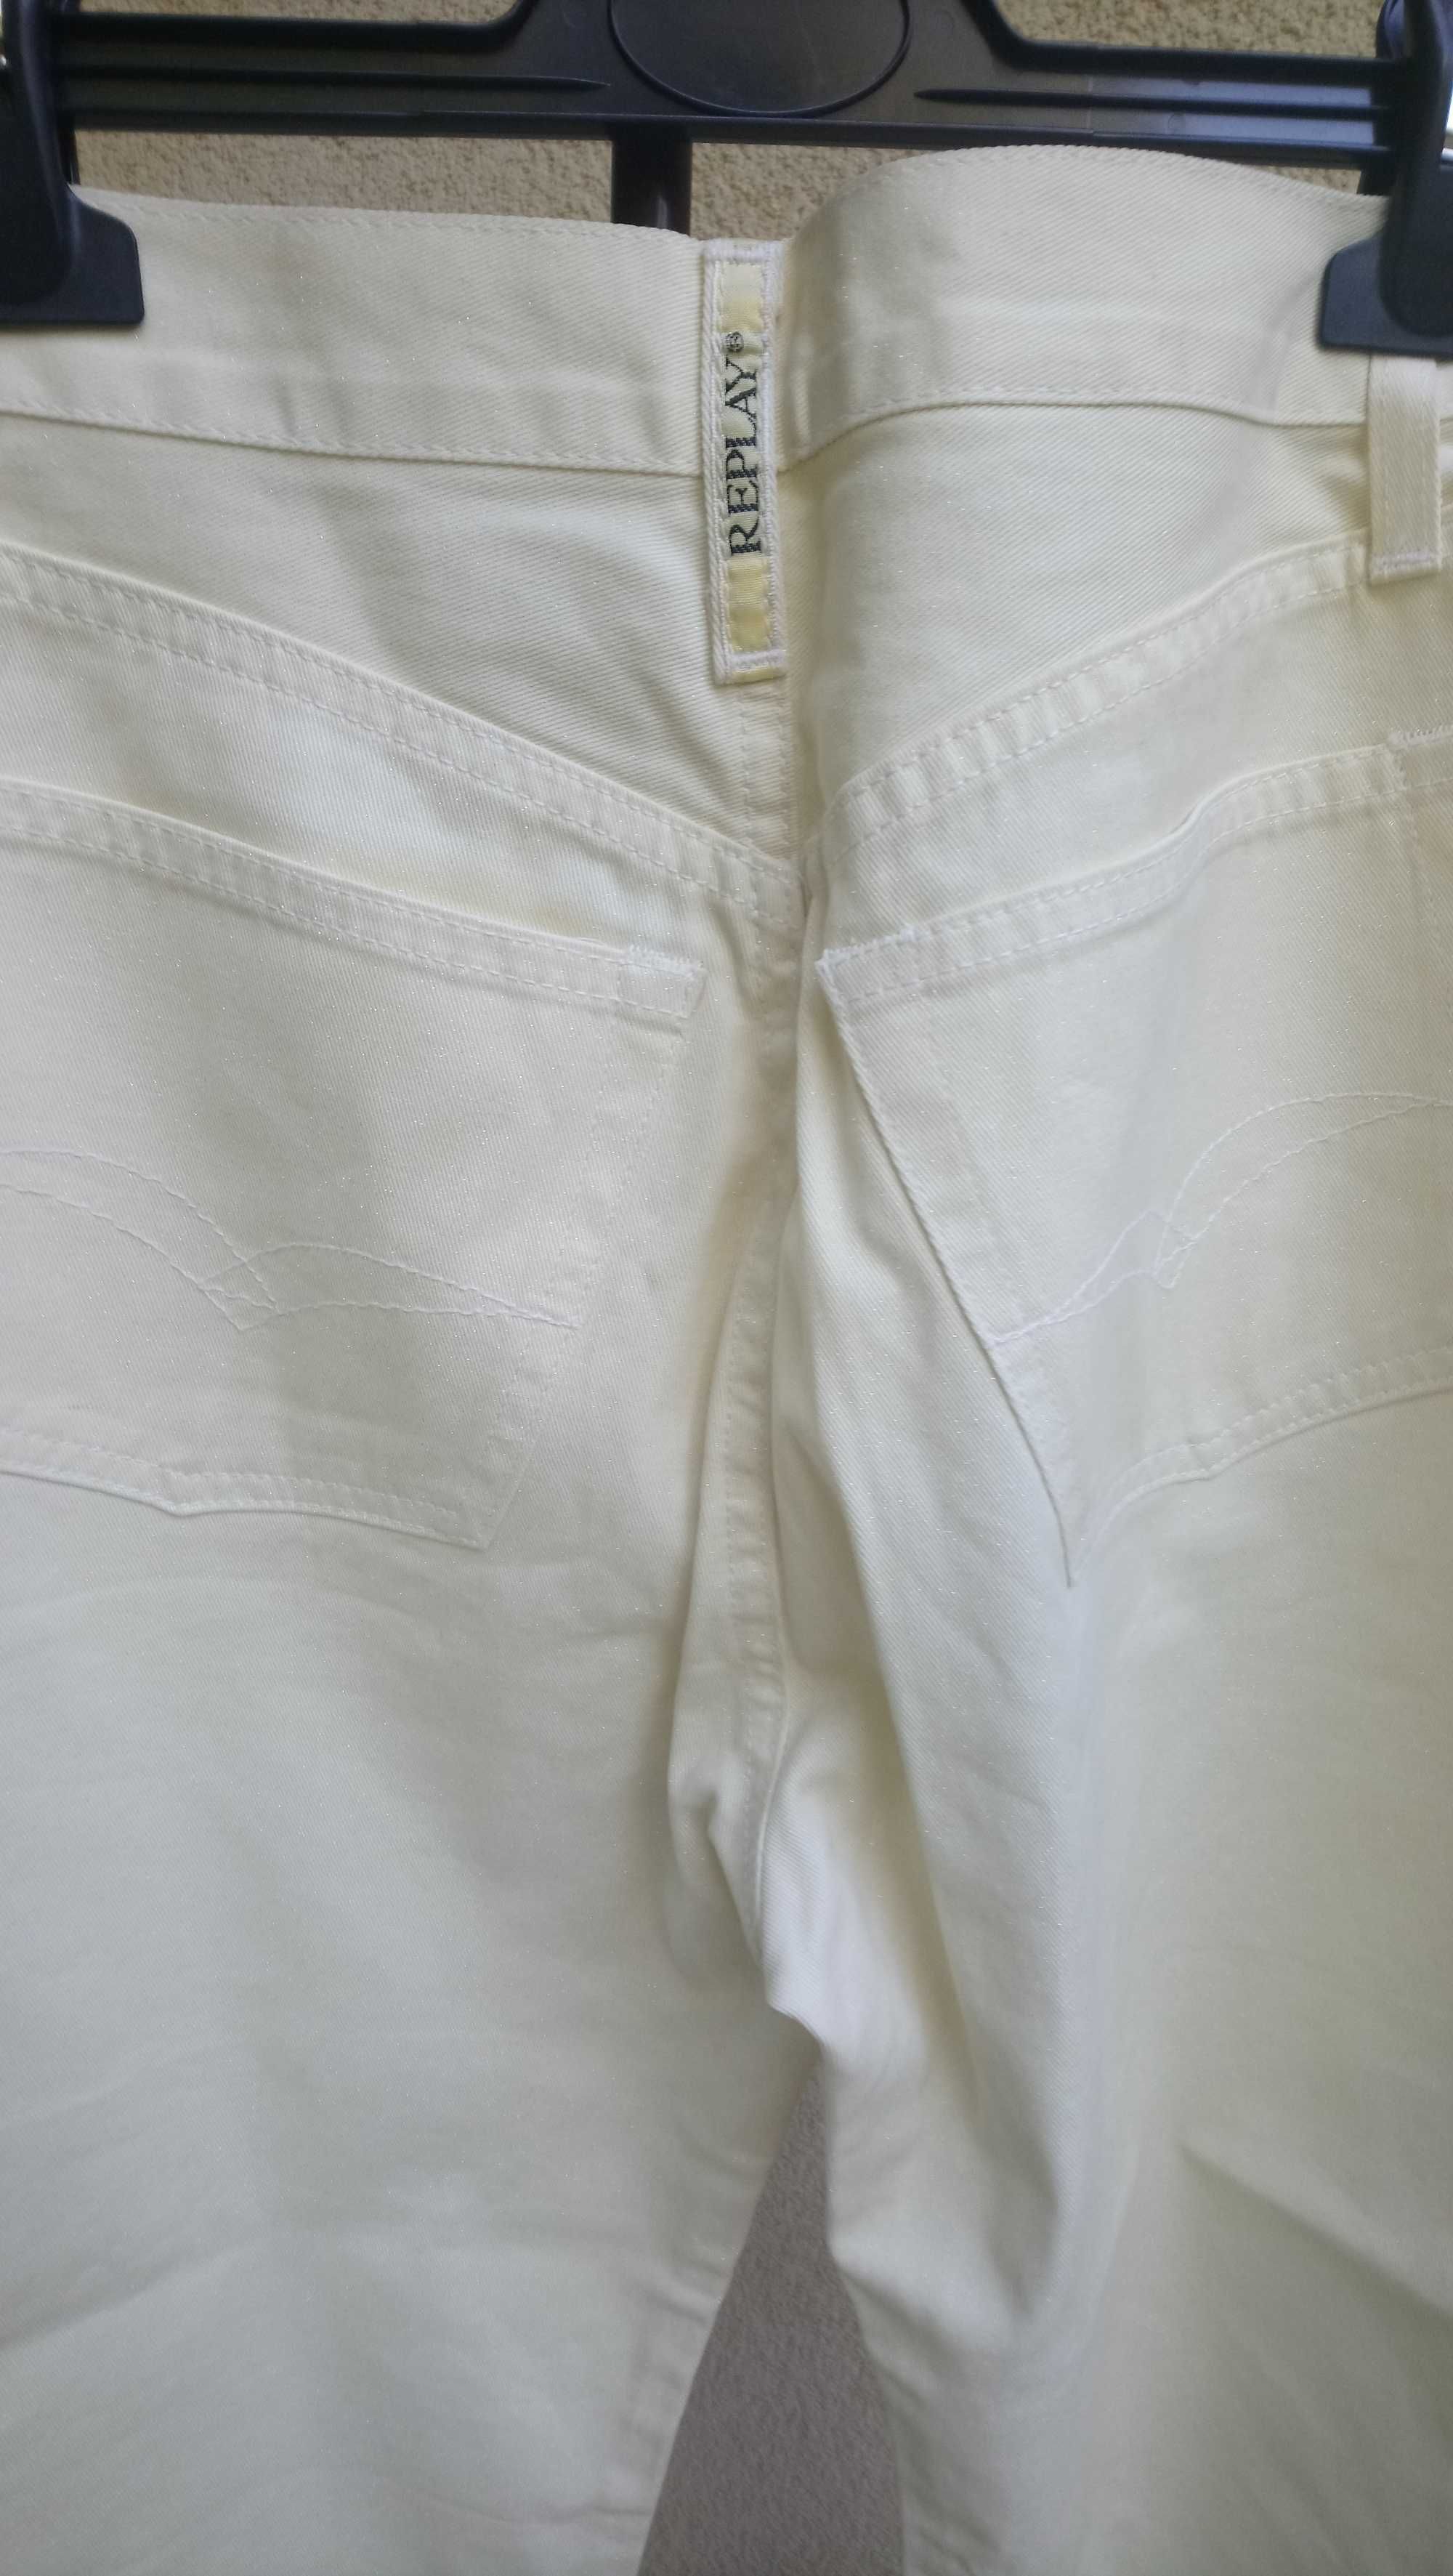 spodnie  włoskie  firmy Trang  - nowe z metką rozm.  S -M